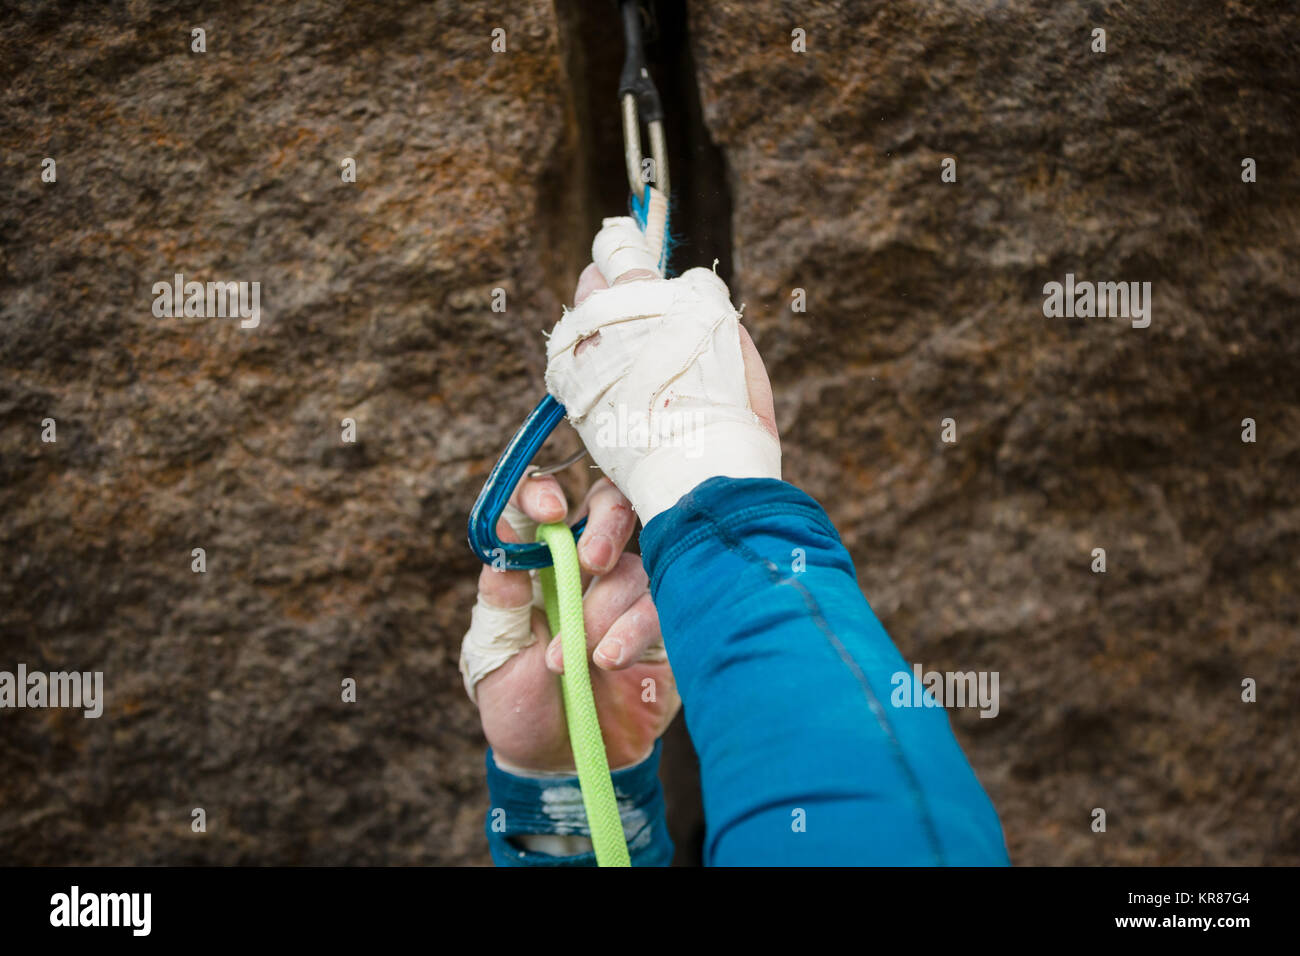 Dettaglio di un uomo clipping nella sua fune ad una di quickdraw durante una arrampicata Foto Stock